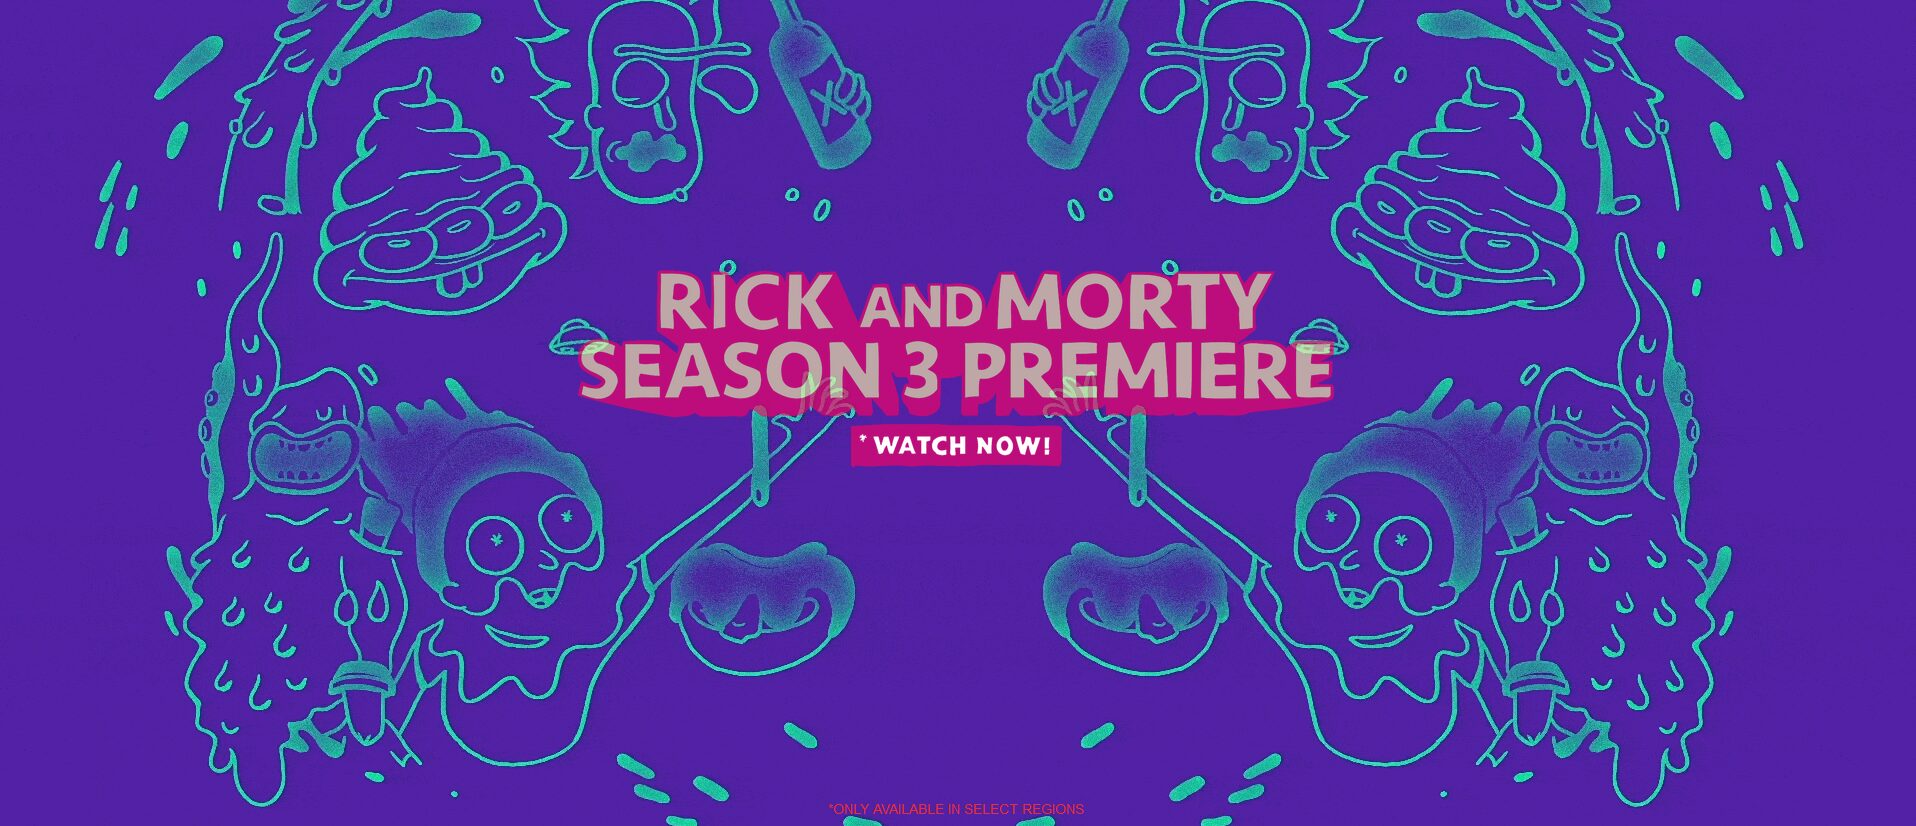 Rick and morty Season 3